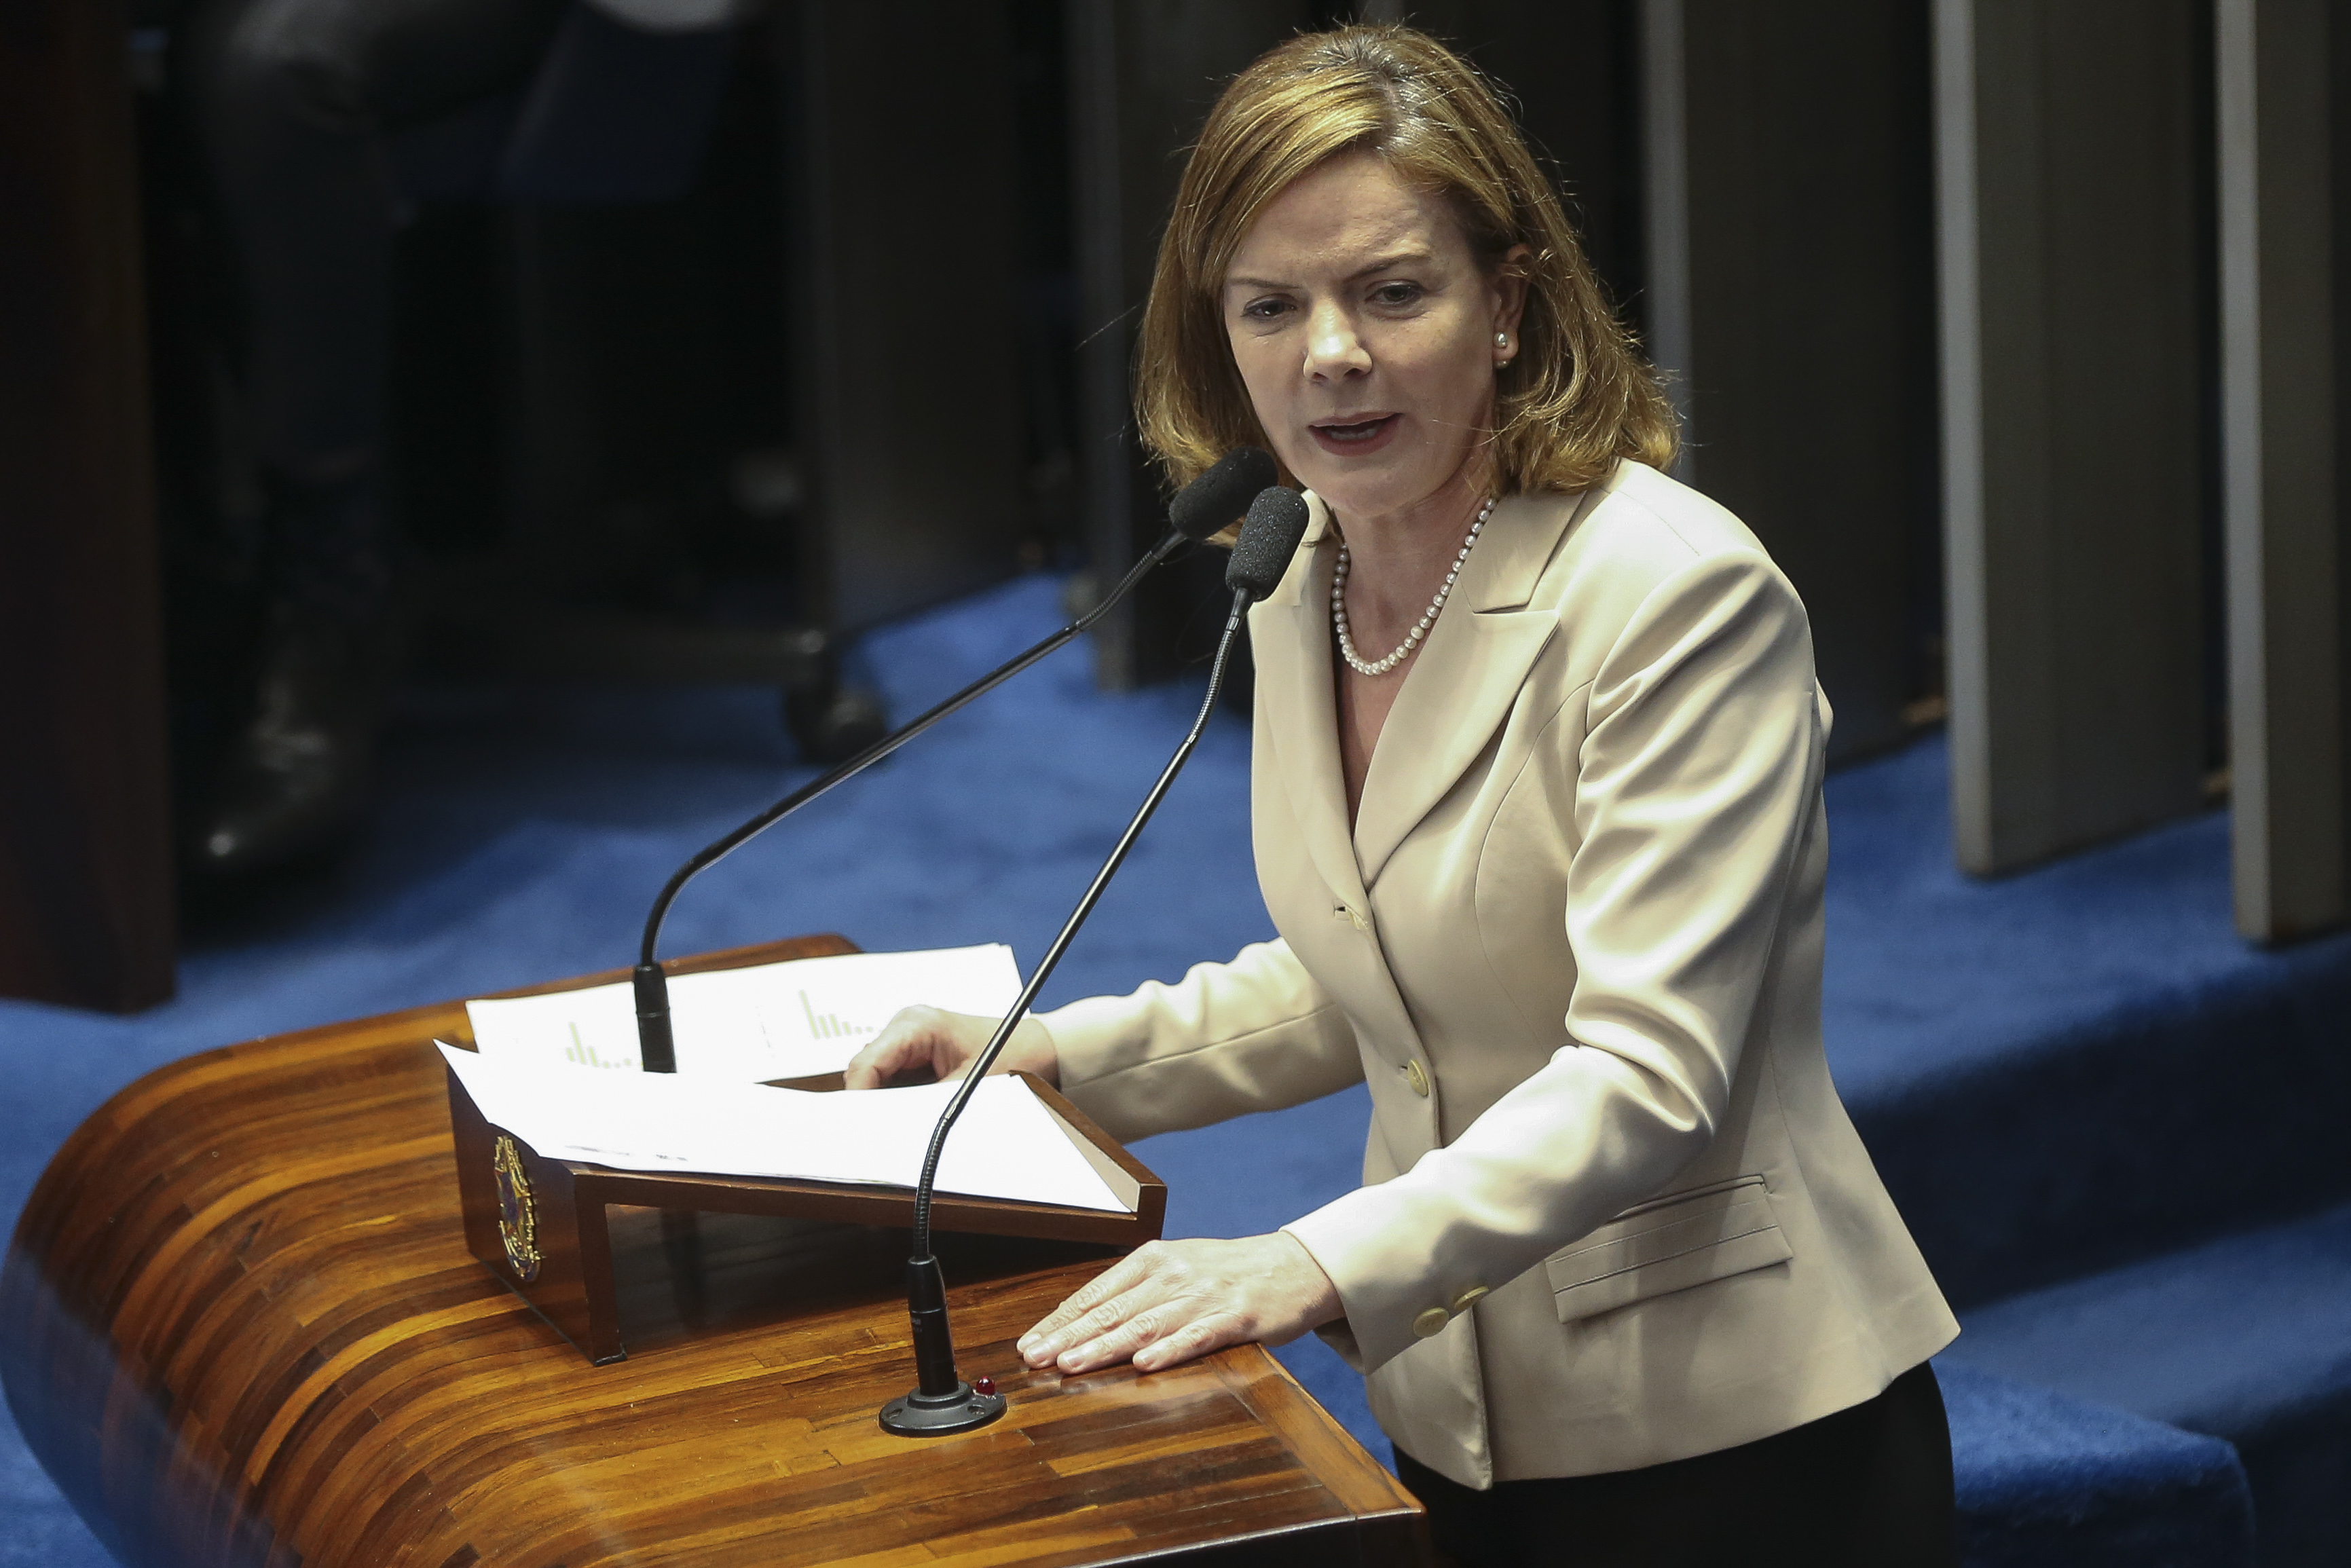  Senadora Gleisi Hoffmann e ex-ministro Paulo Bernardo serão julgados pelo STF na semana que vem